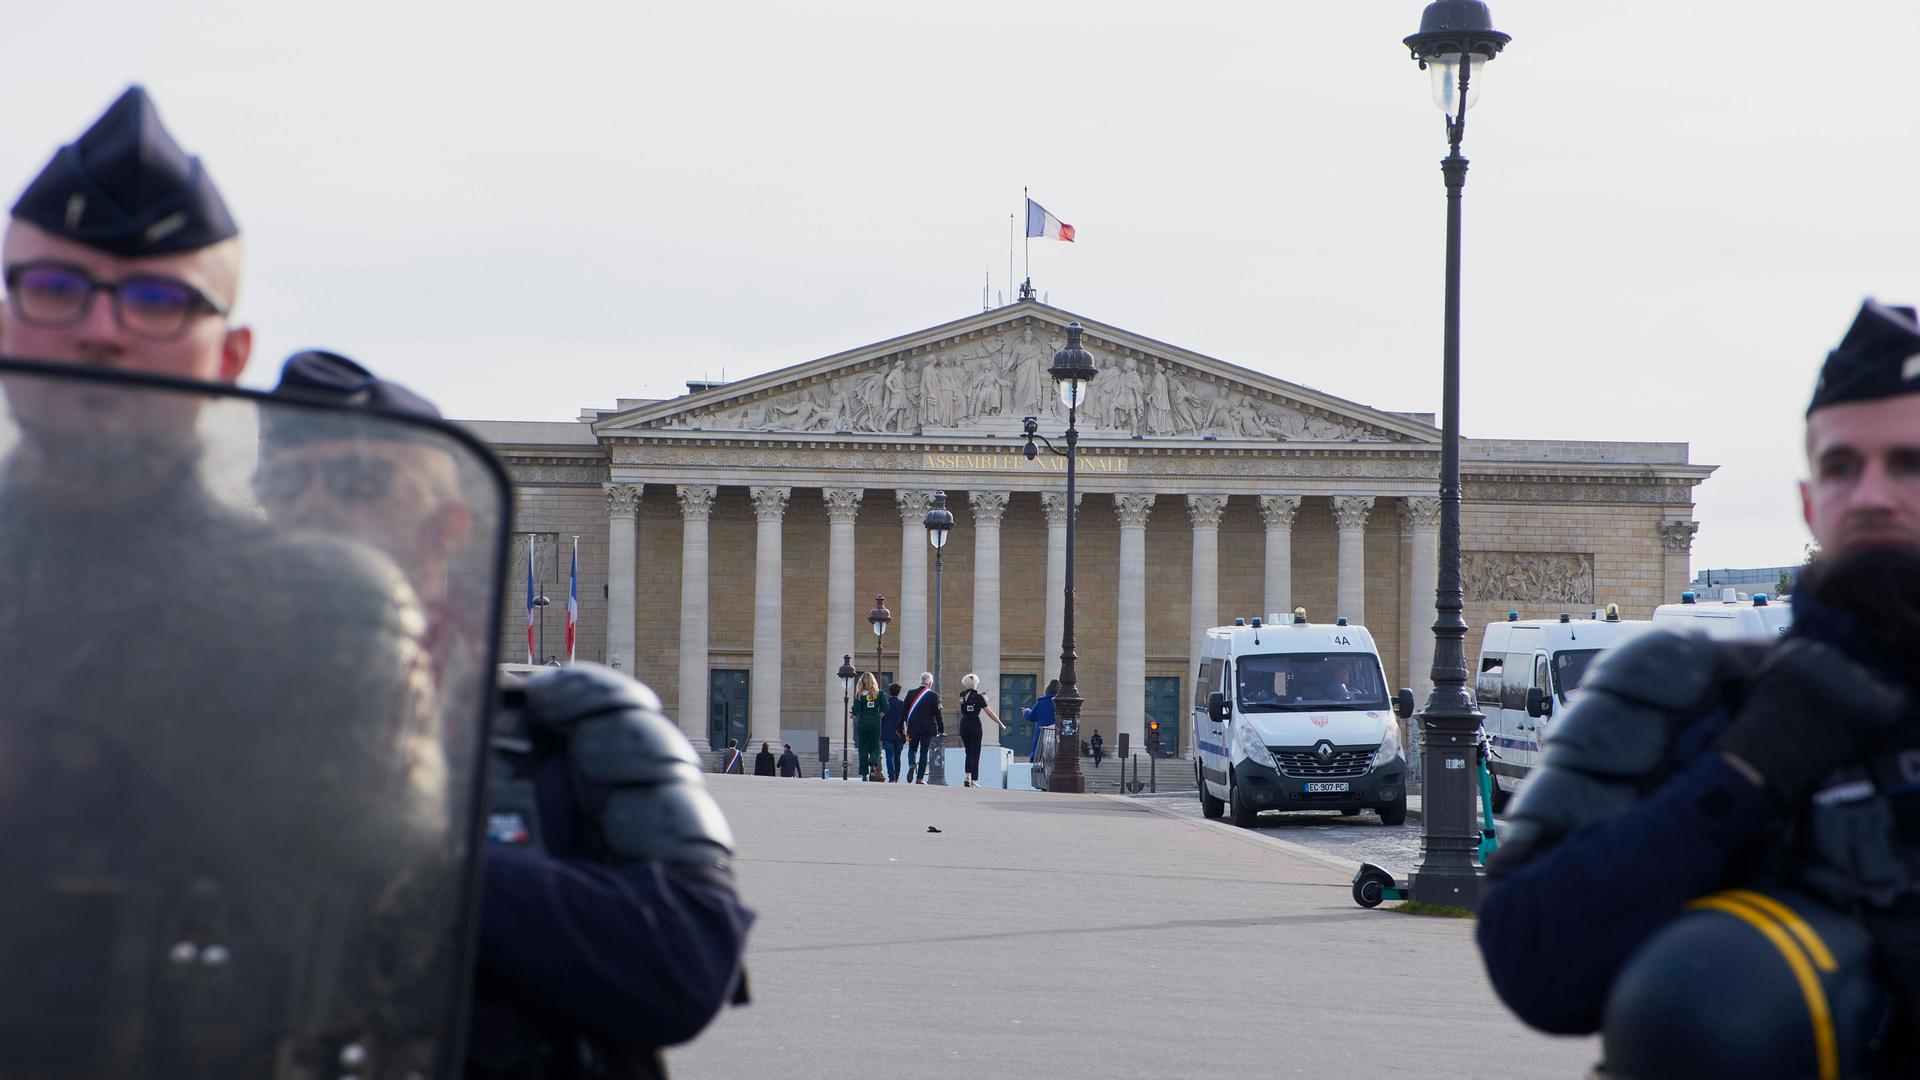 Polizisten schützen das französische Parlament.